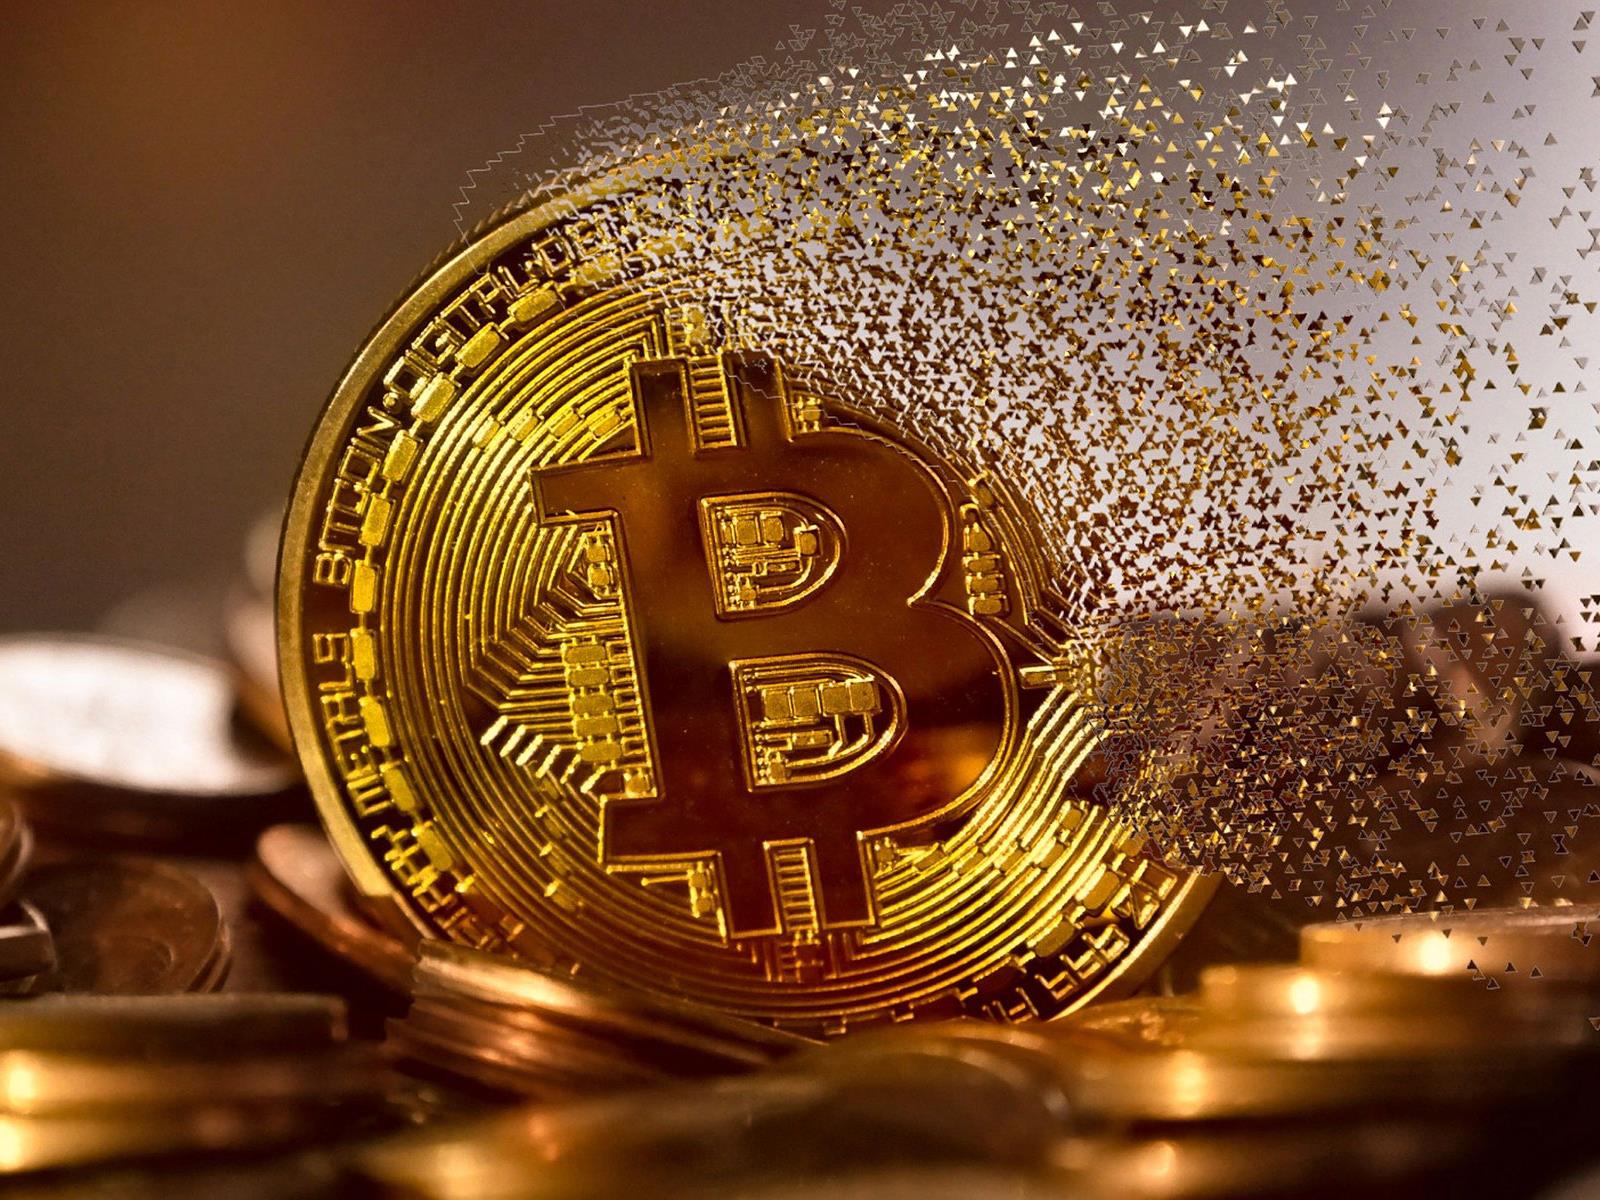 Latest News on Bitcoin, Crypto and Blockchain - Blockchain News